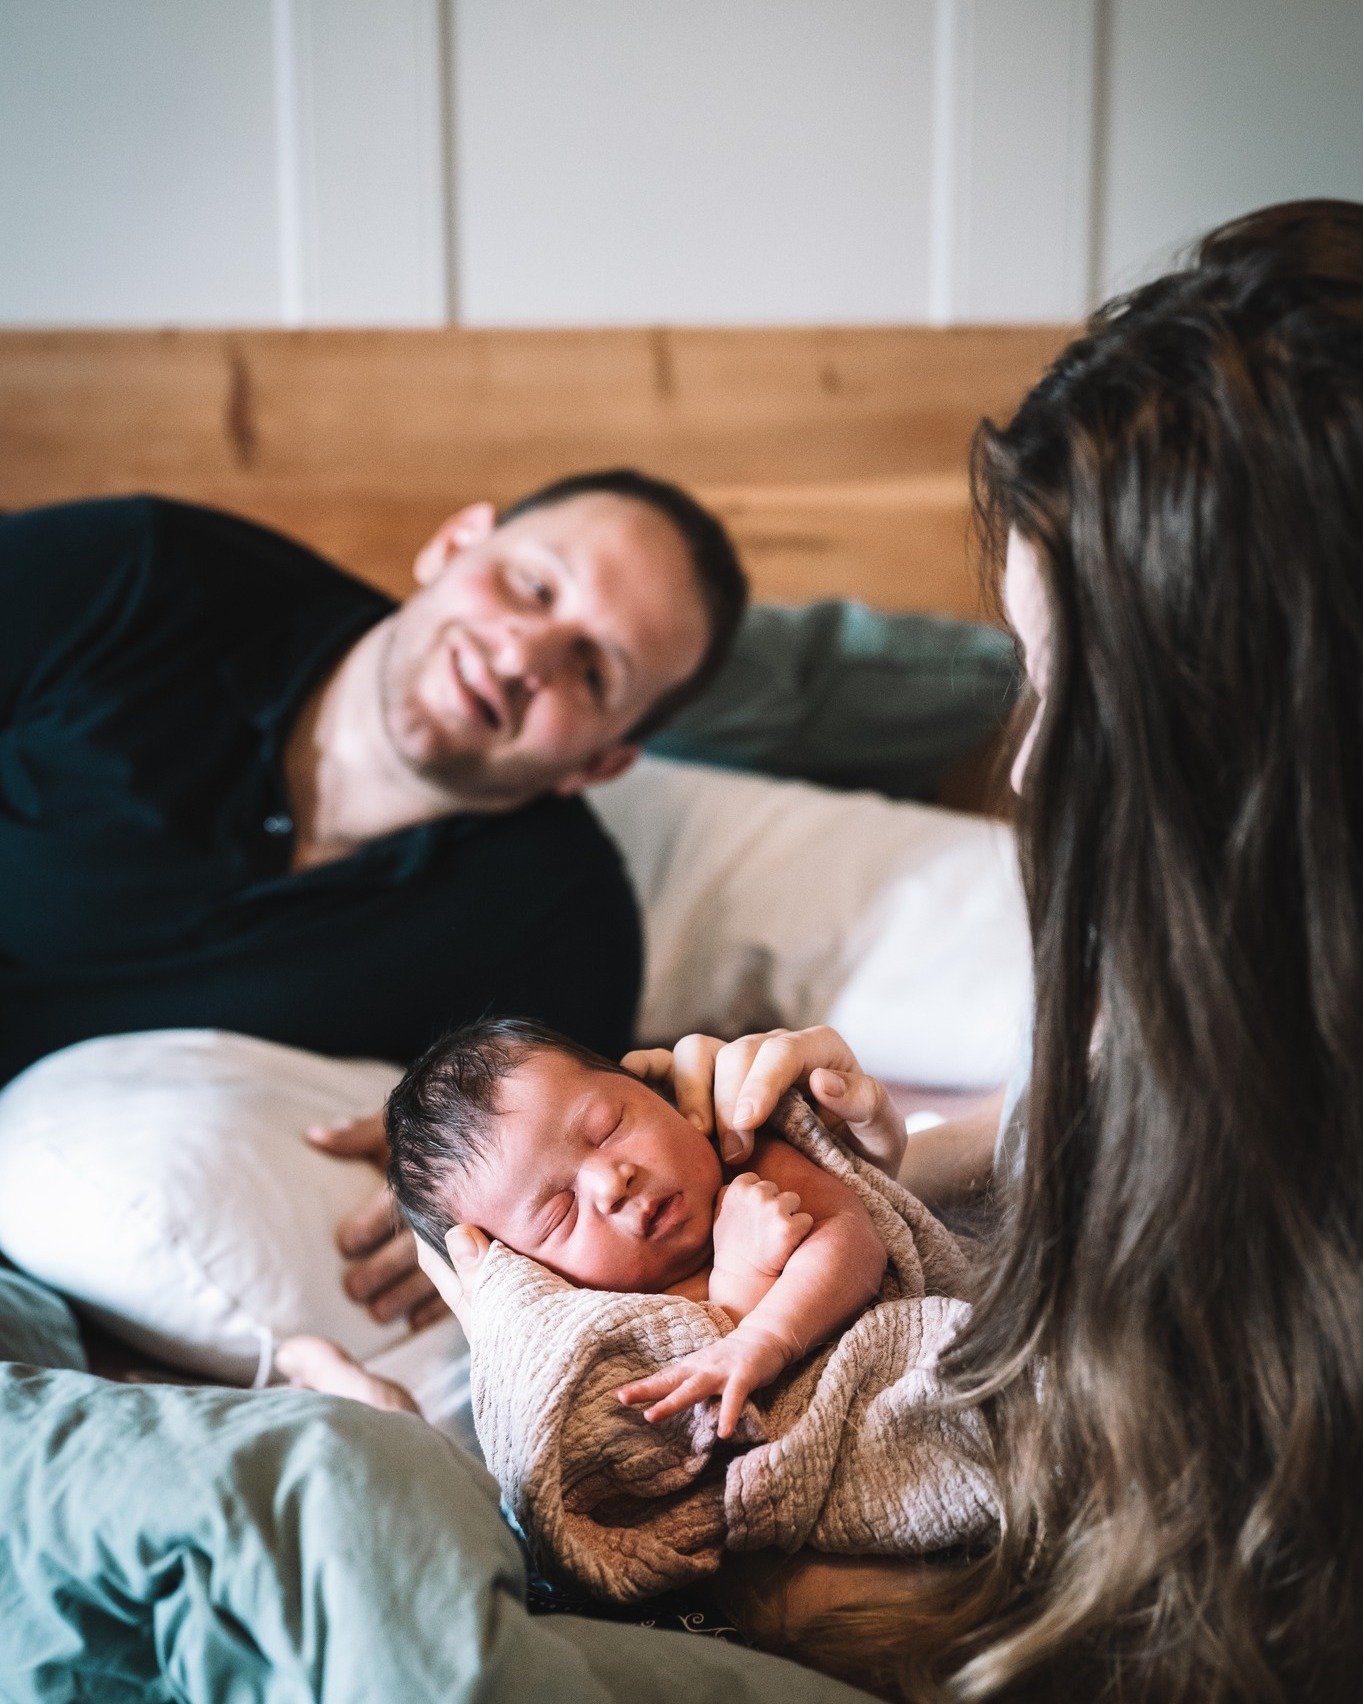 Die ersten Wunderstunden mit dem &laquo;neuen&raquo; Baby. 

#dokumentarischefamilienfotografie #oliviaetterfotografie #wochenbettreportage #familienfotografiebern